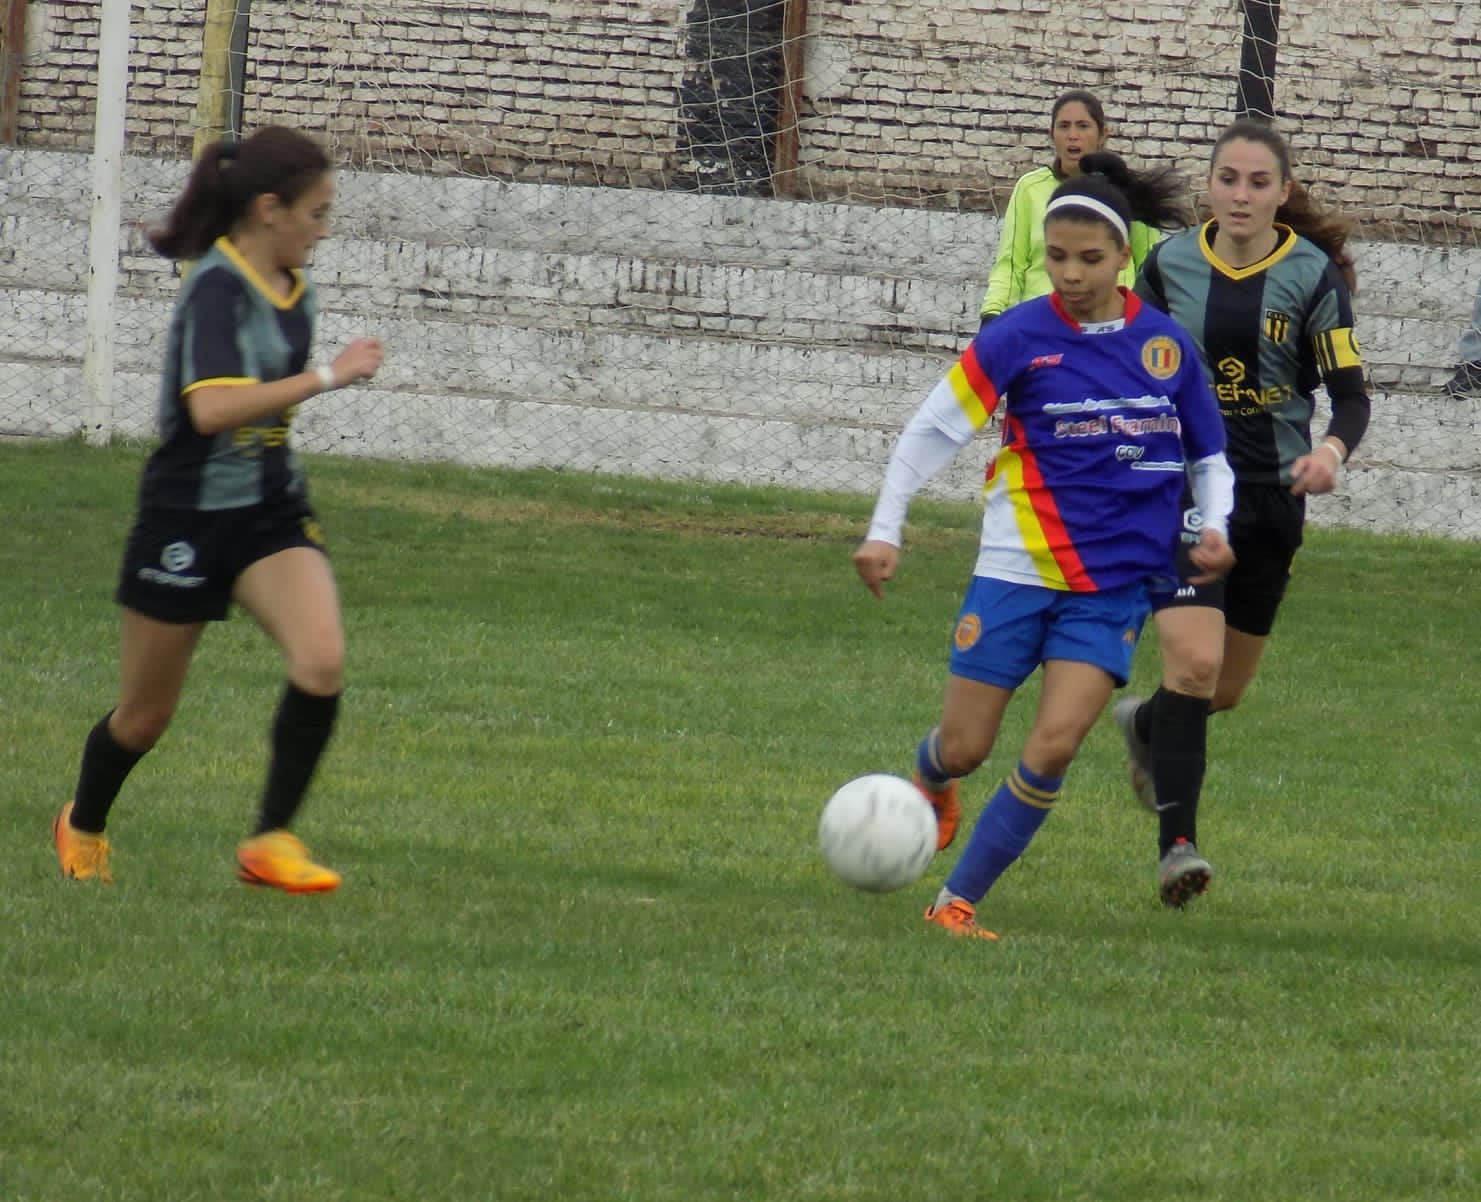 Futbol Femenino: goleó Huracán, ganaron Argentino, Garmense, Cascallares y Colegiales